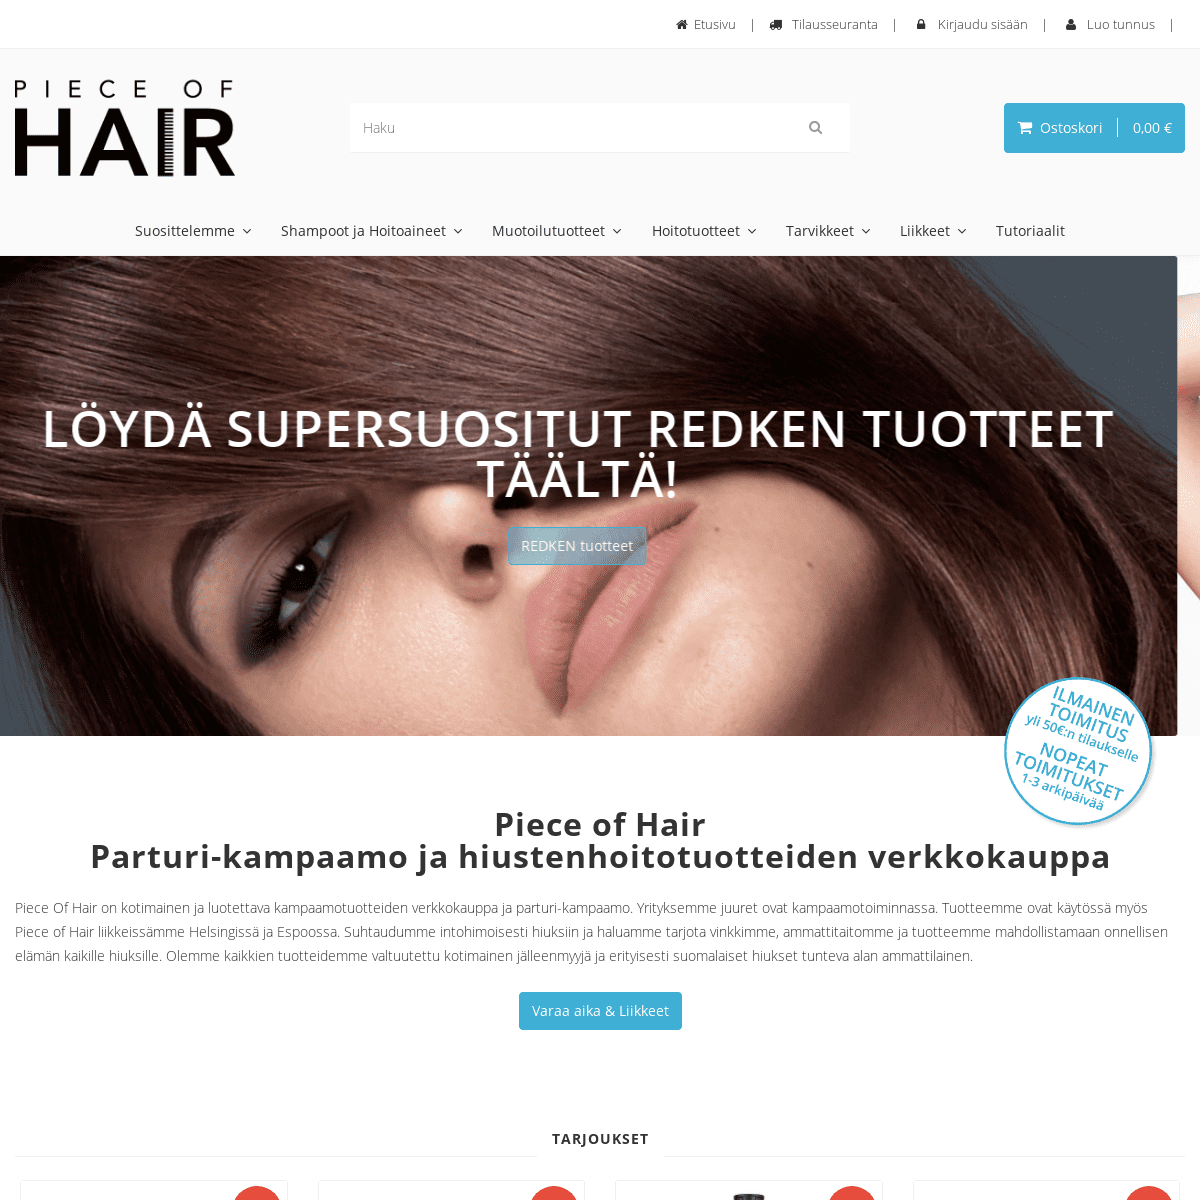 Piece of Hair - Parturi-kampaamo & hiustenhoitotuotteiden verkkokauppa